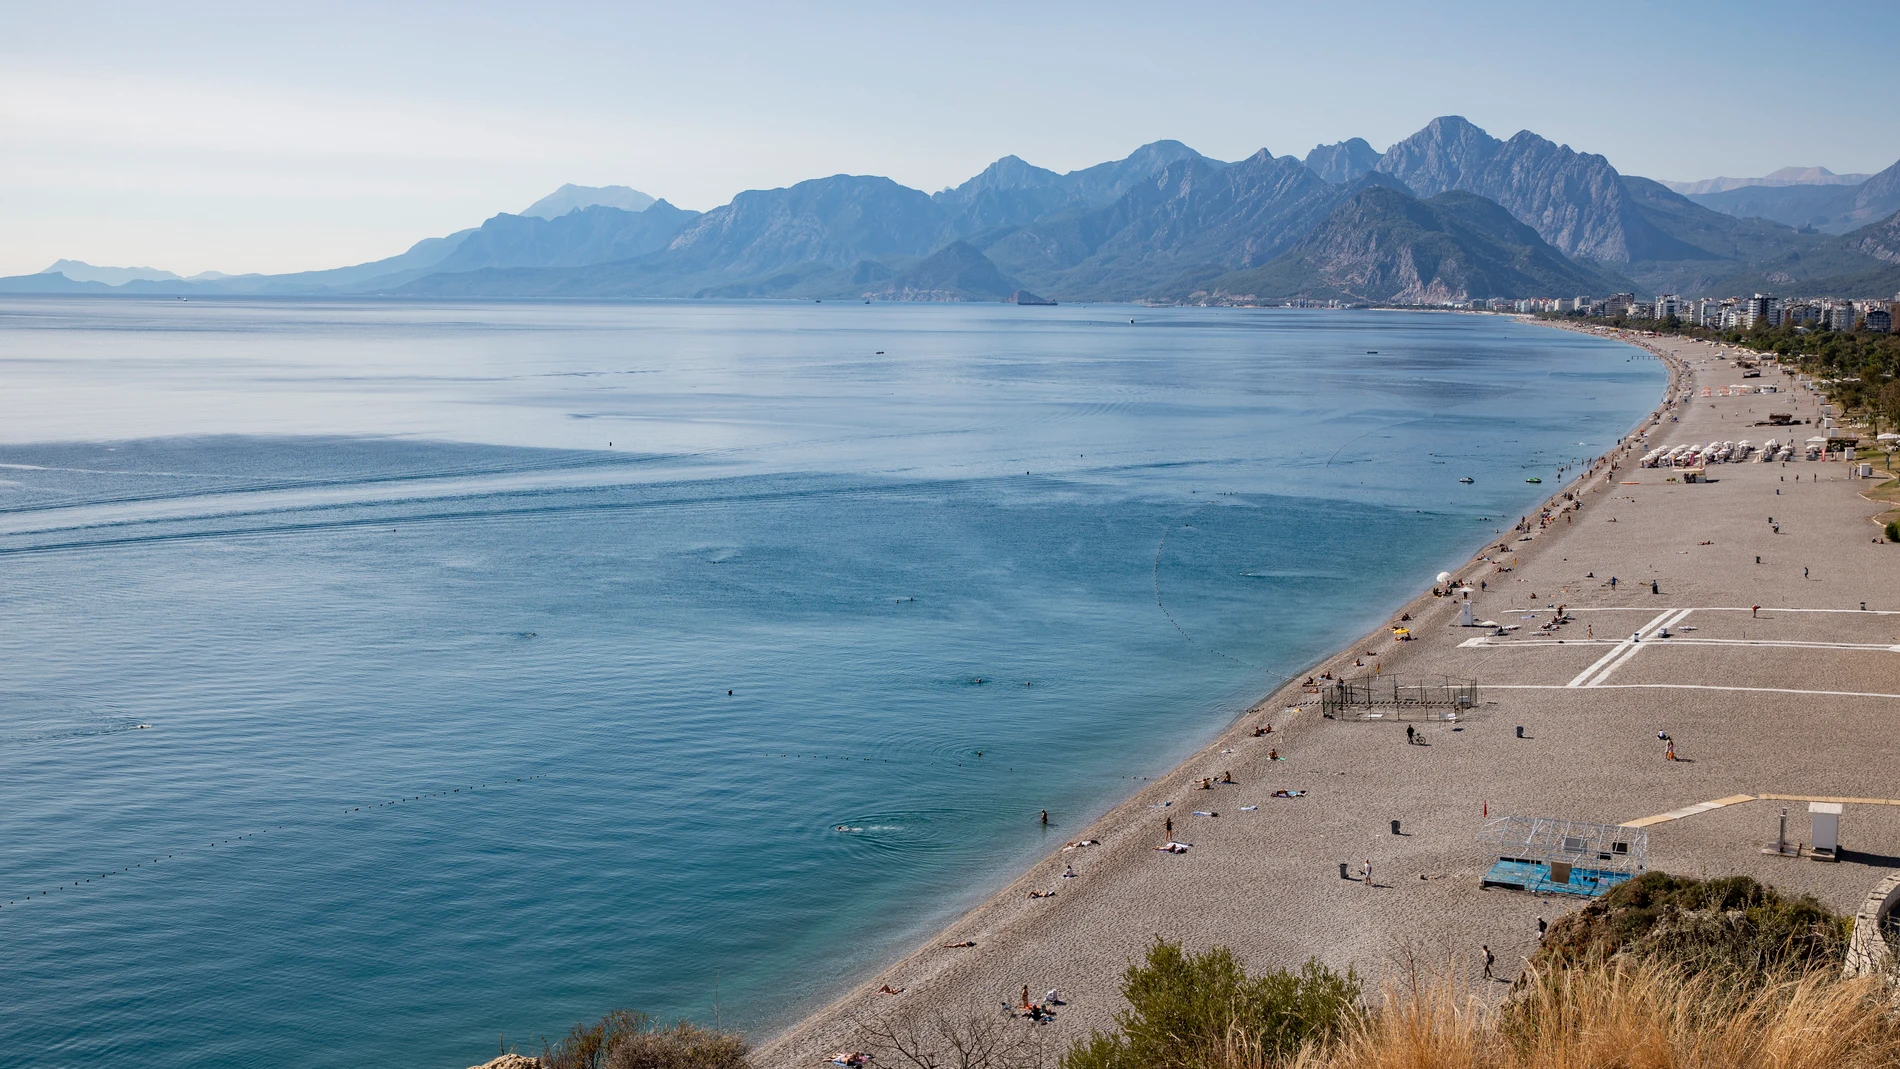 El éxito de Antalya no solo se debe a sus bonitas playas, sino también a ser uno de los principales destinos dentro del 'Safe Tourism'